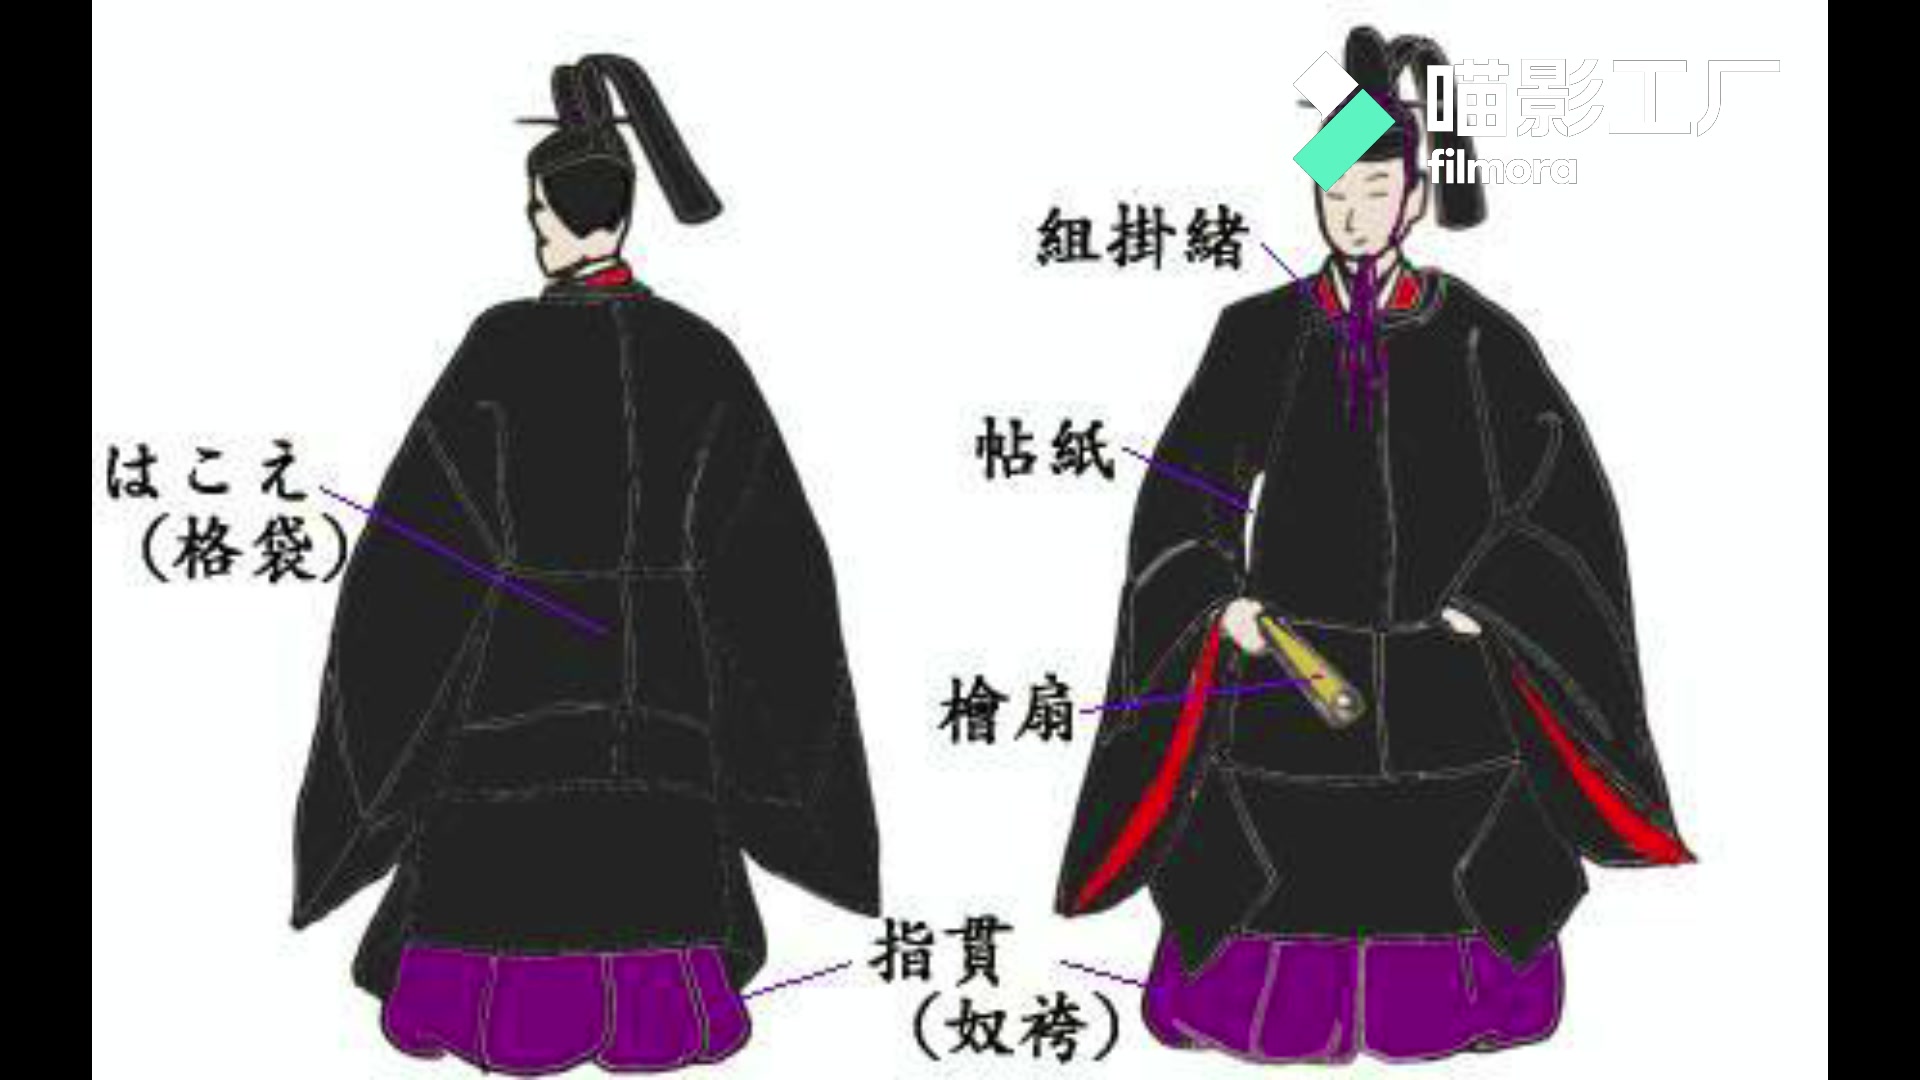 日本人没有和服以前穿什么浅析日本和服的发展史和演变过程